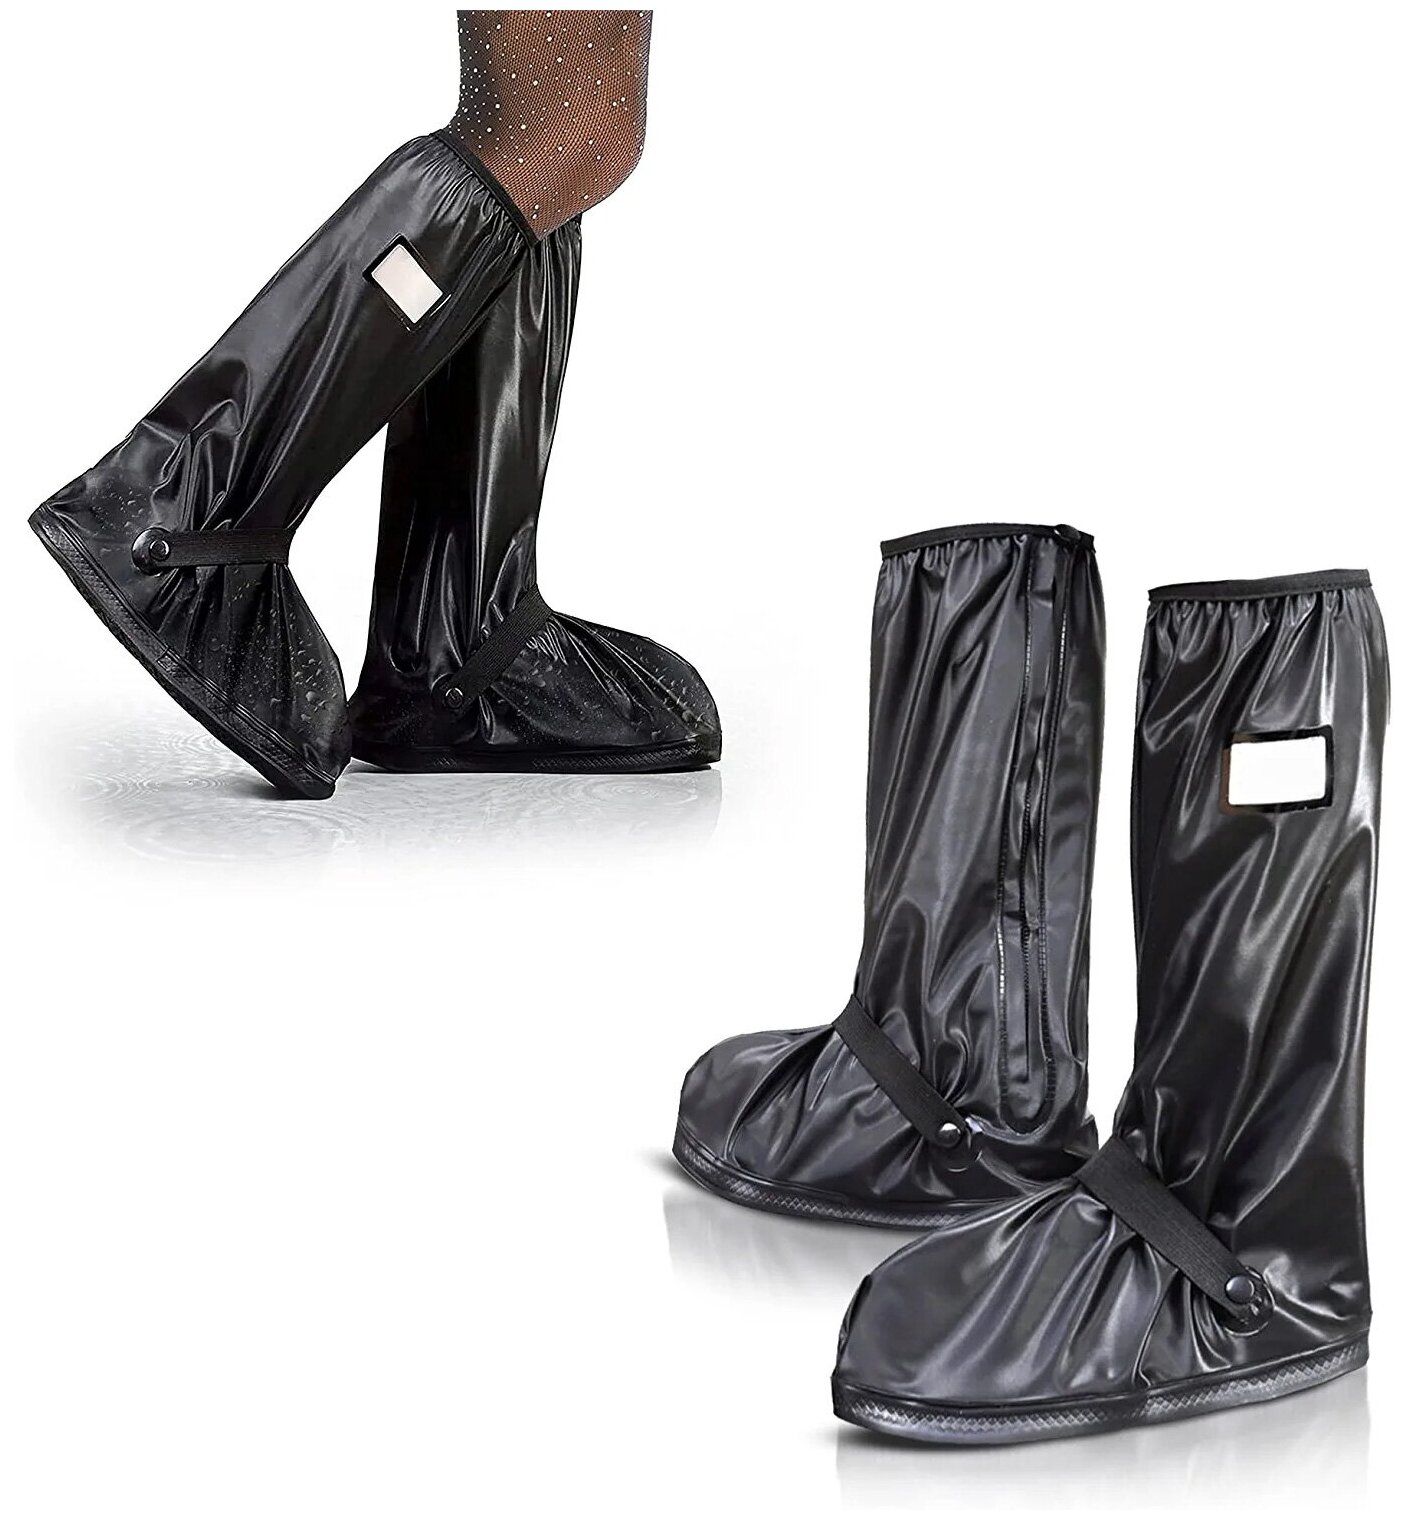 Чехлы для обуви защитные многоразовые XXL Мотобахилы дождевики для обуви силиконовые водонепроницаемые бахилы сапоги высокие от дождя от воды соли